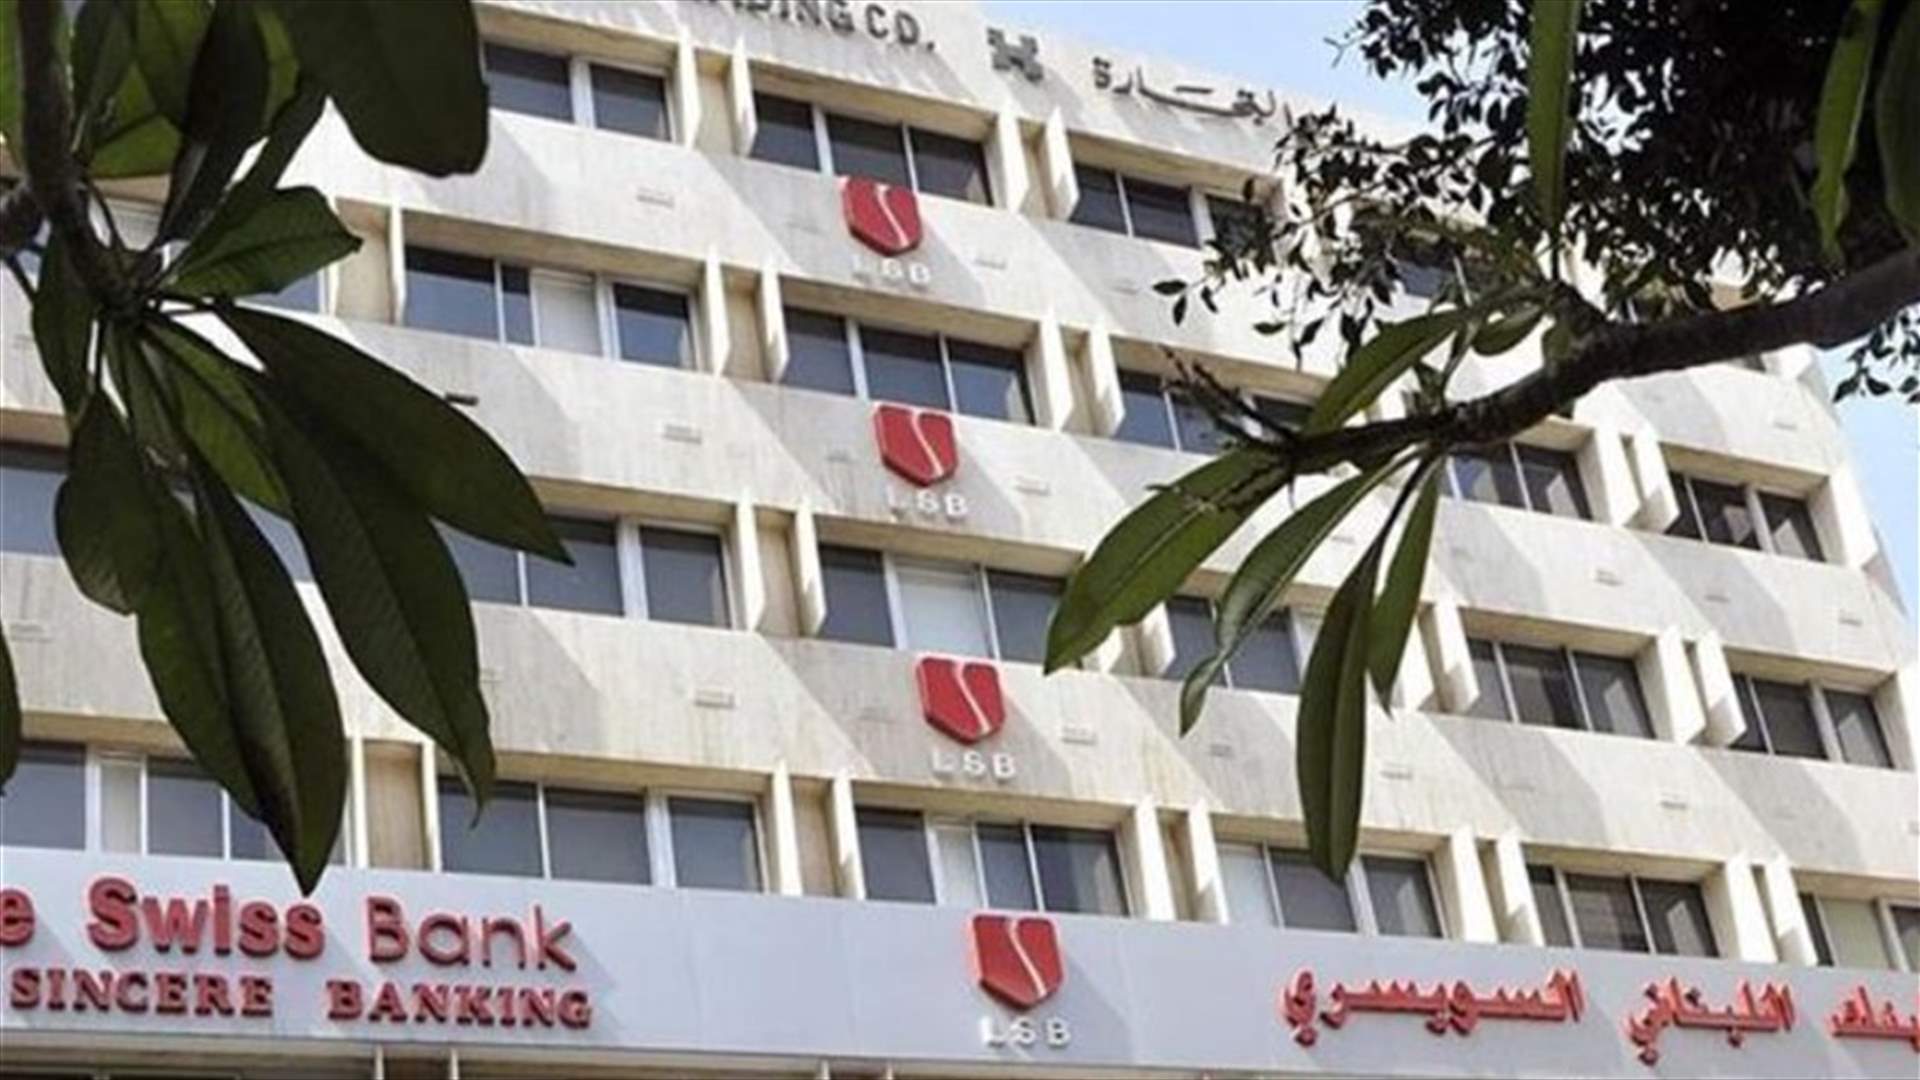 هل تم توقيف سارقي البنك اللبناني السويسري؟ قوى الامن توضح...